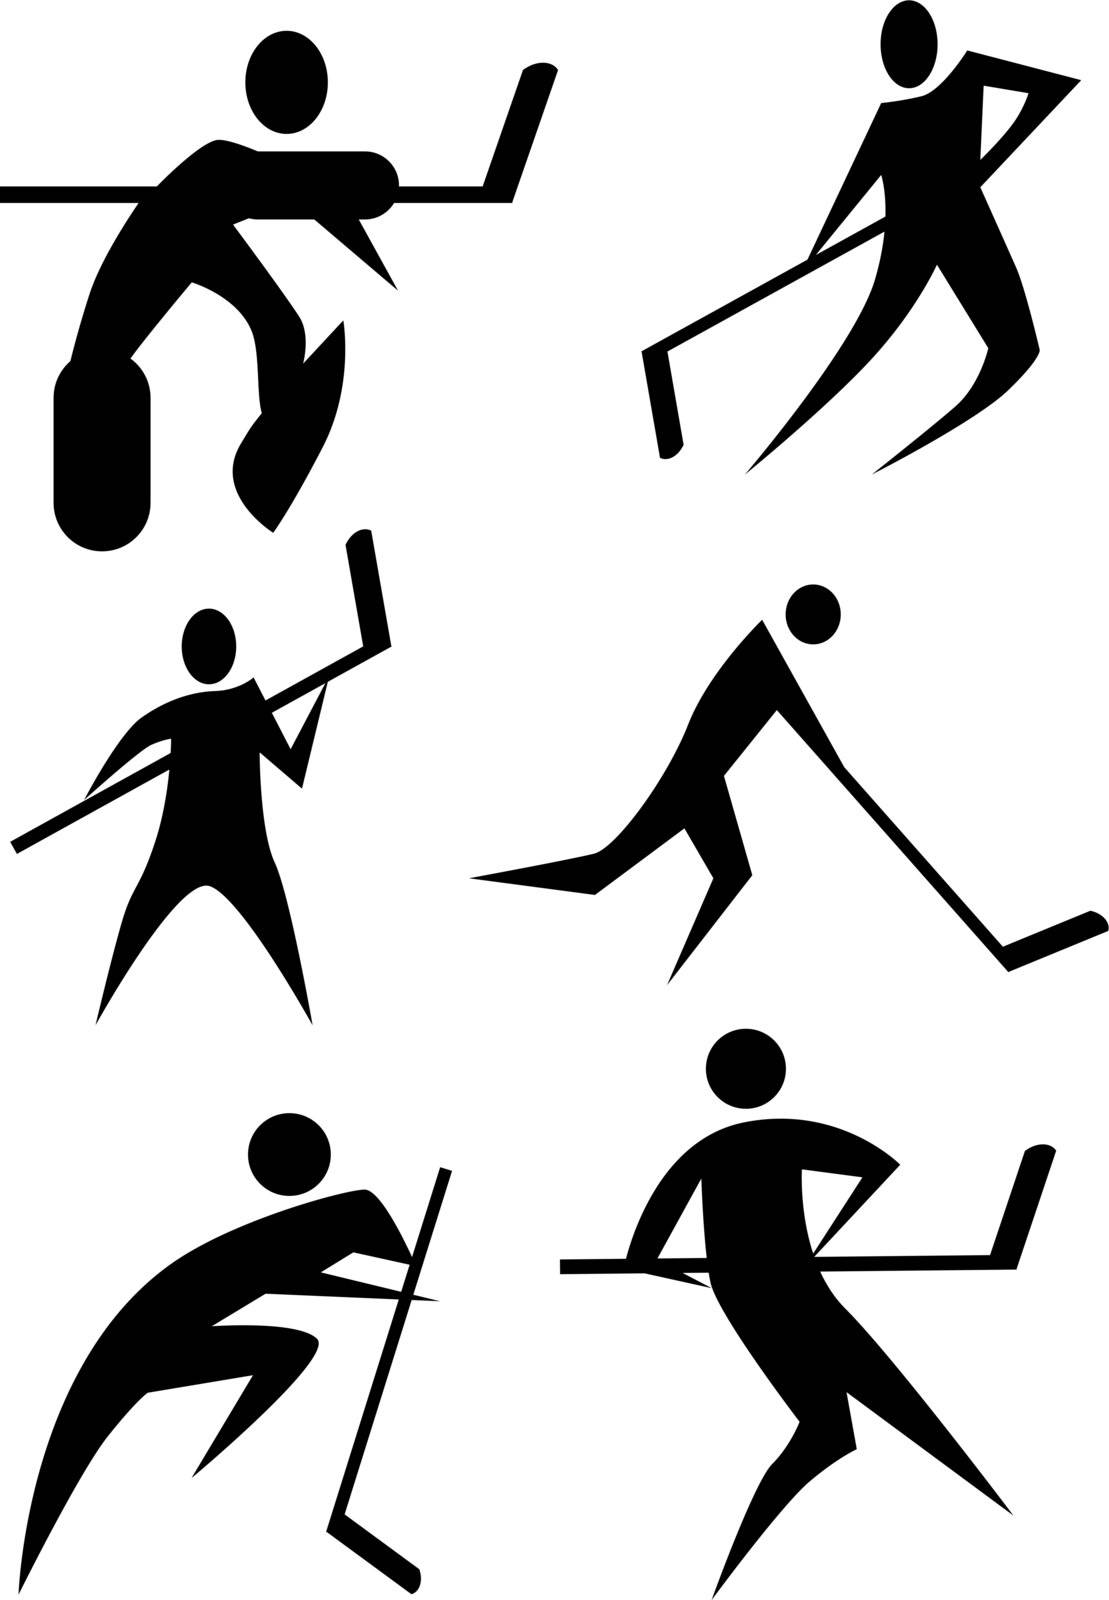 Hockey stick figure set isolated on a white background.